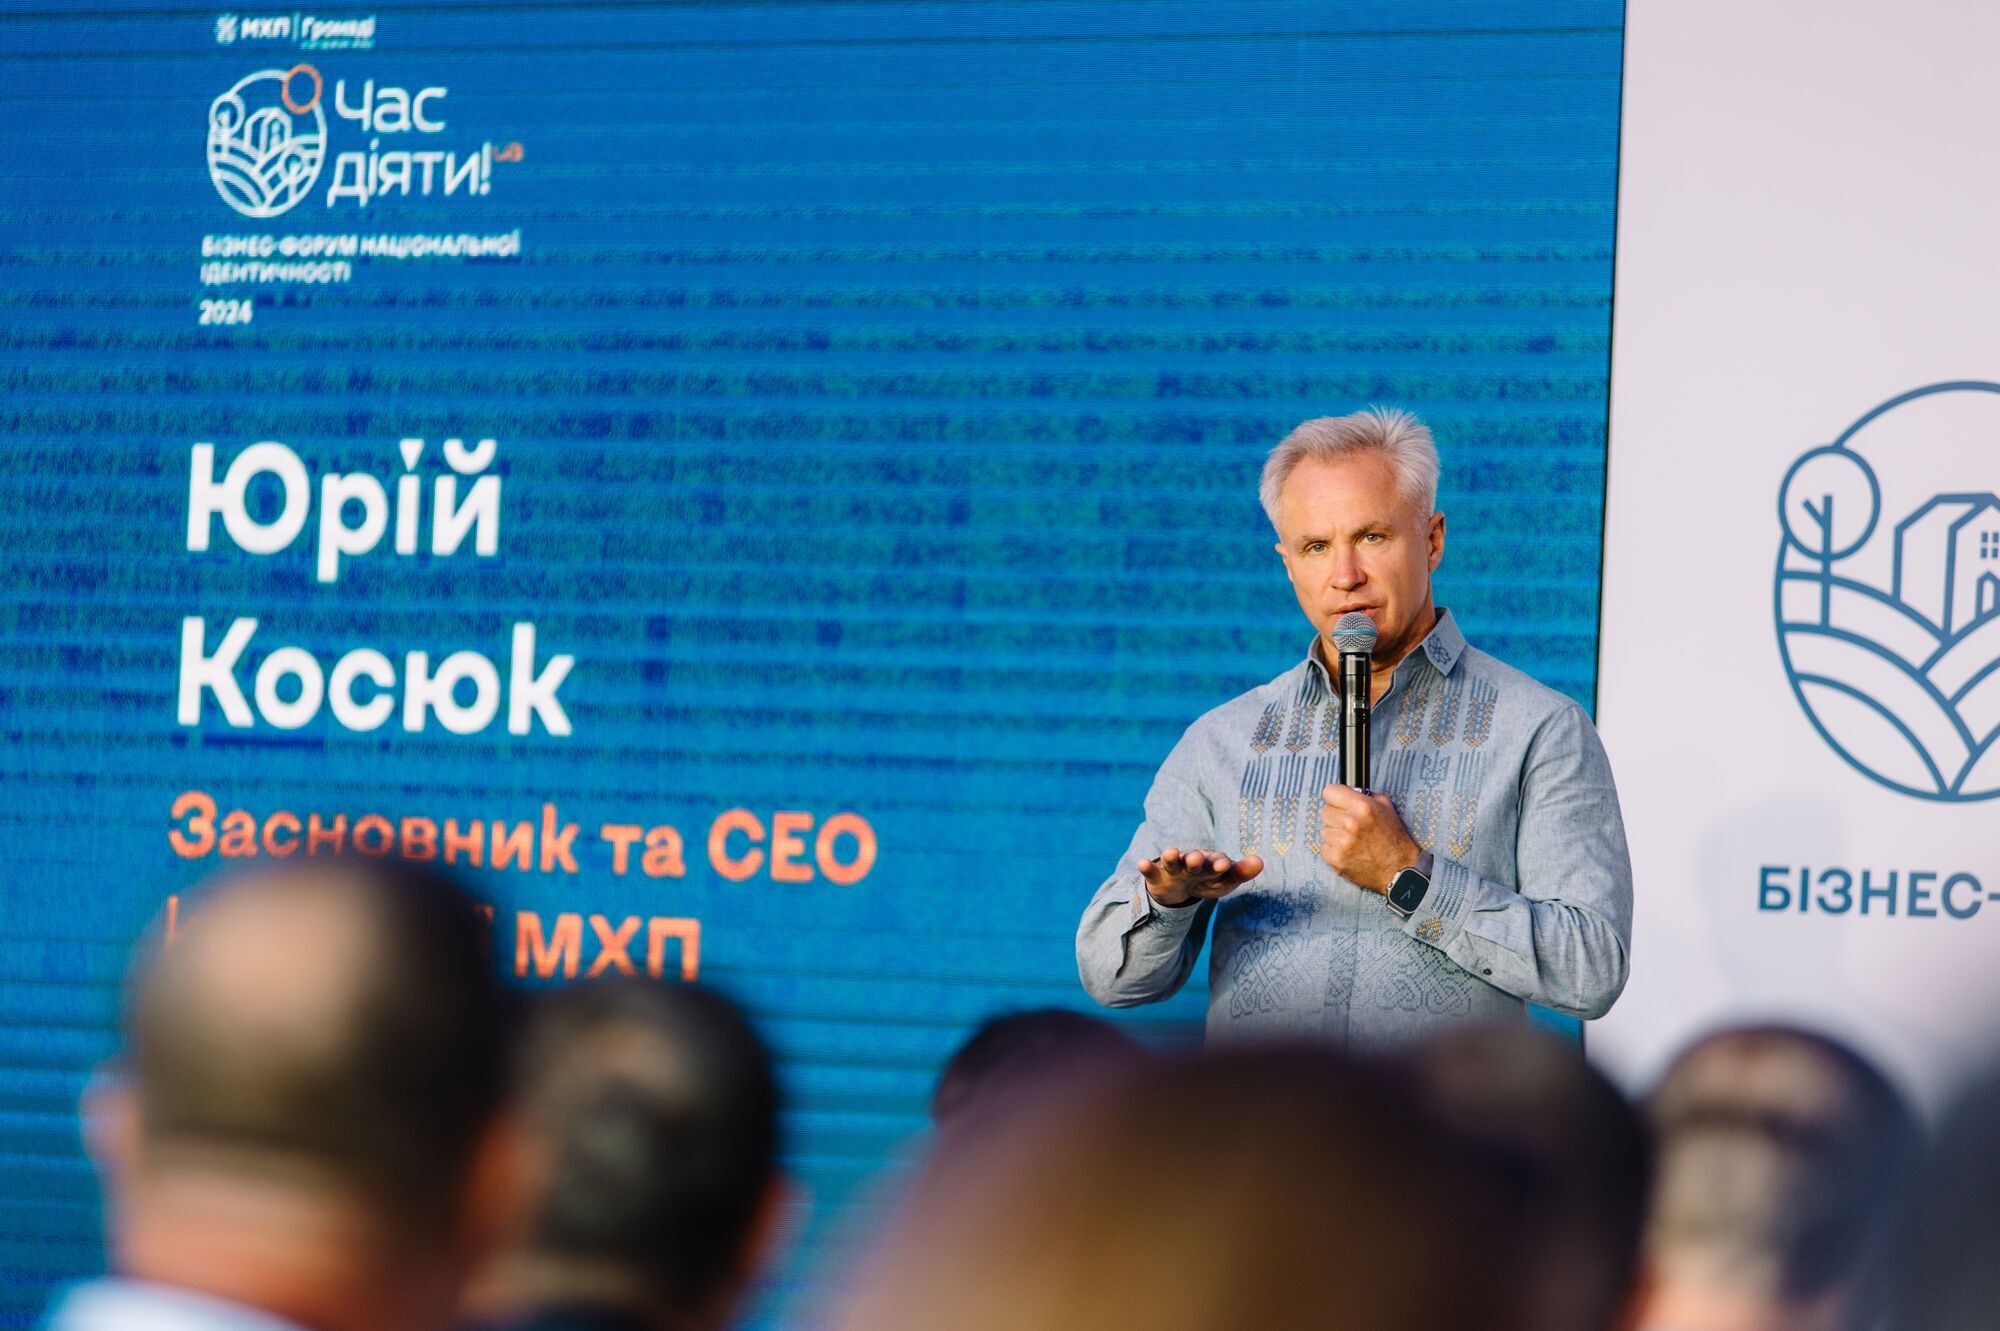 Бізнес-форум національної ідентичності "ЧАС ДІЯТИ.UA" в Києві об'єднав представників бізнесу та громад